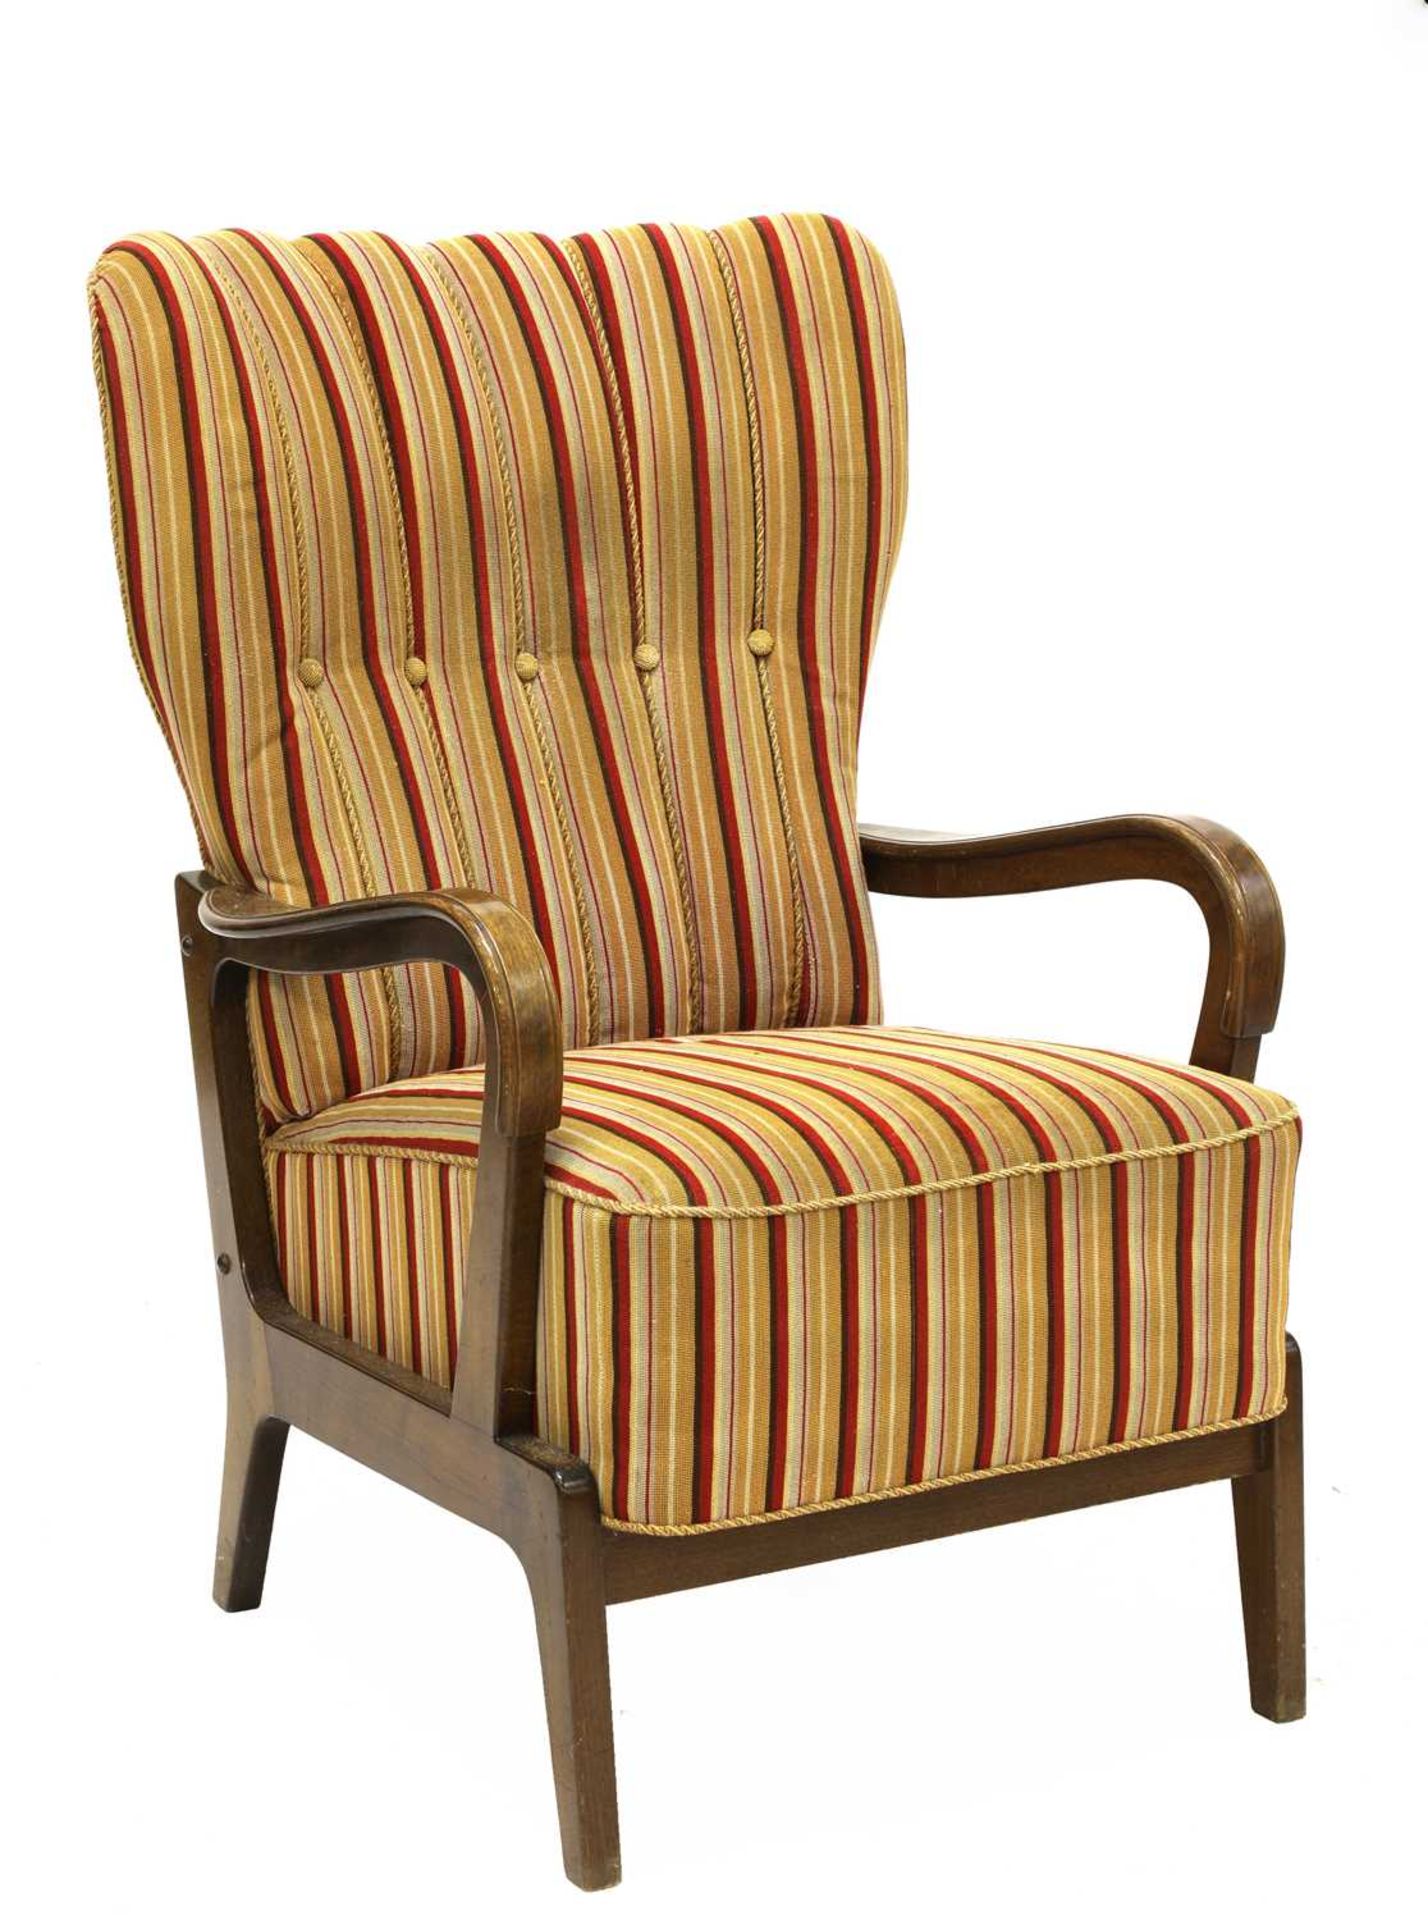 A Danish beech framed armchair,